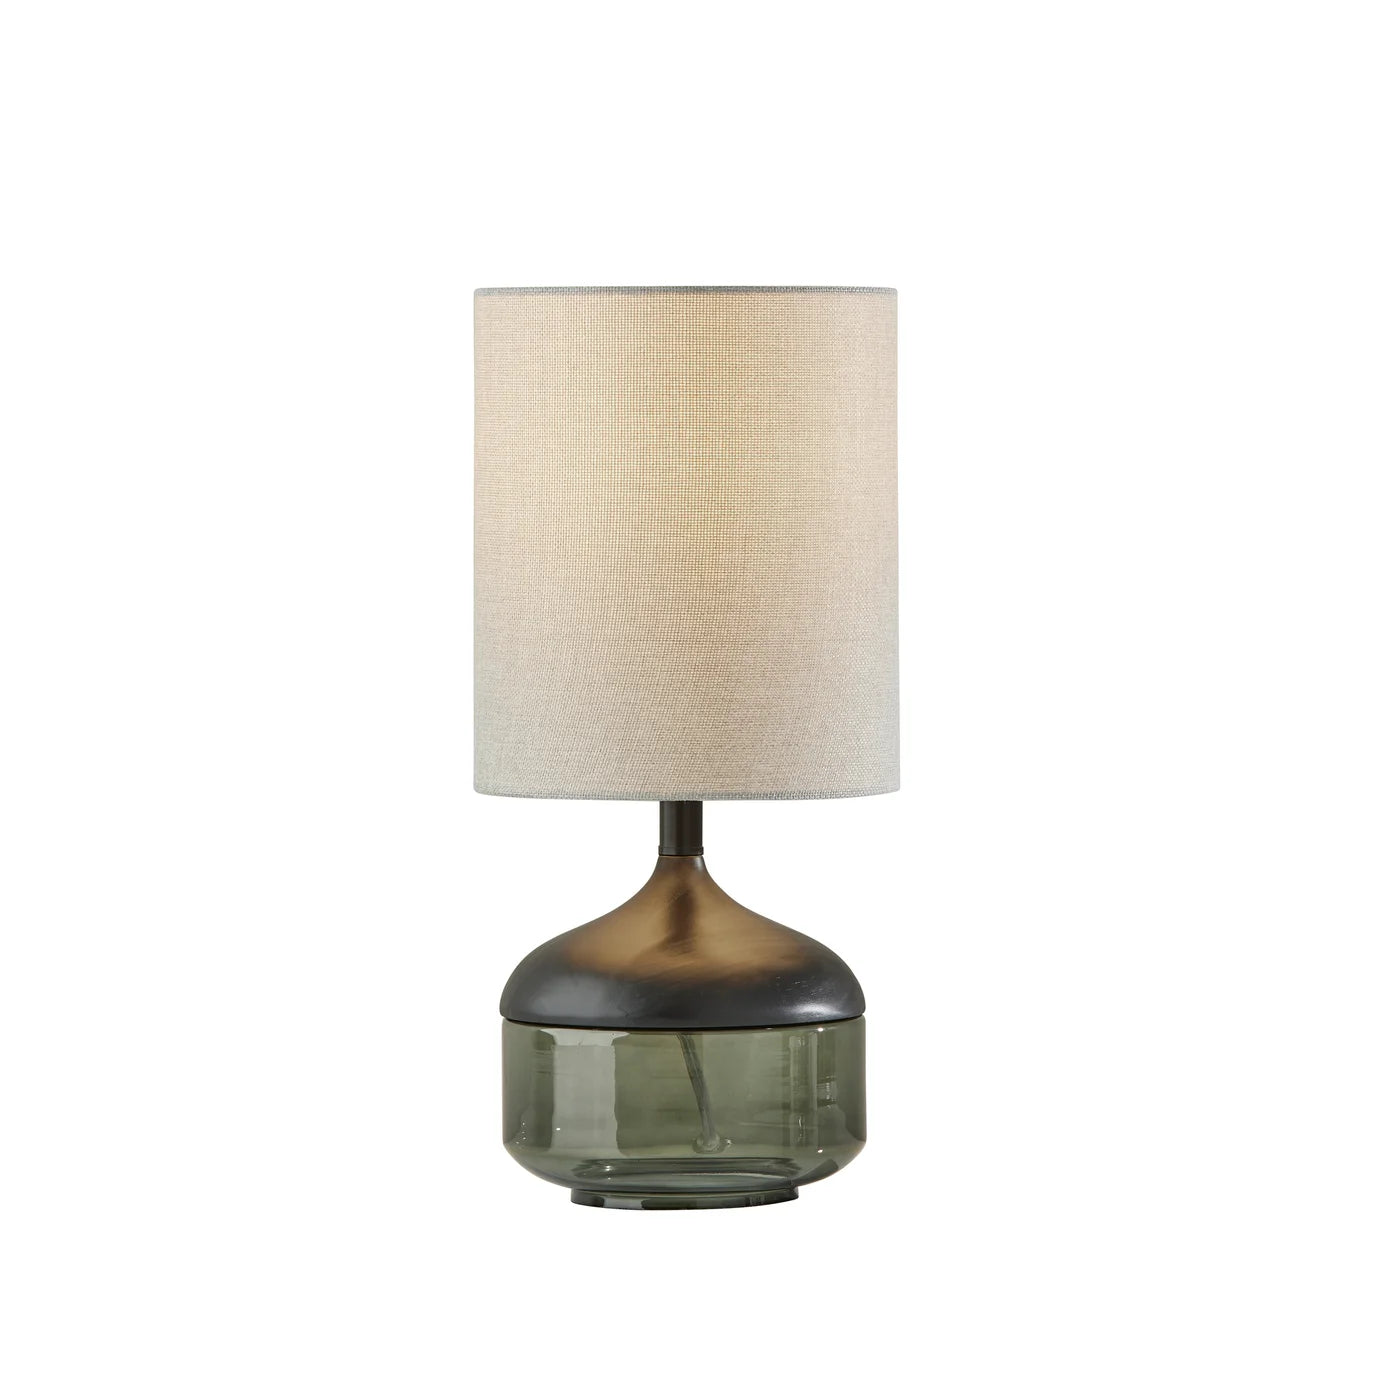 Machino Table Lamp